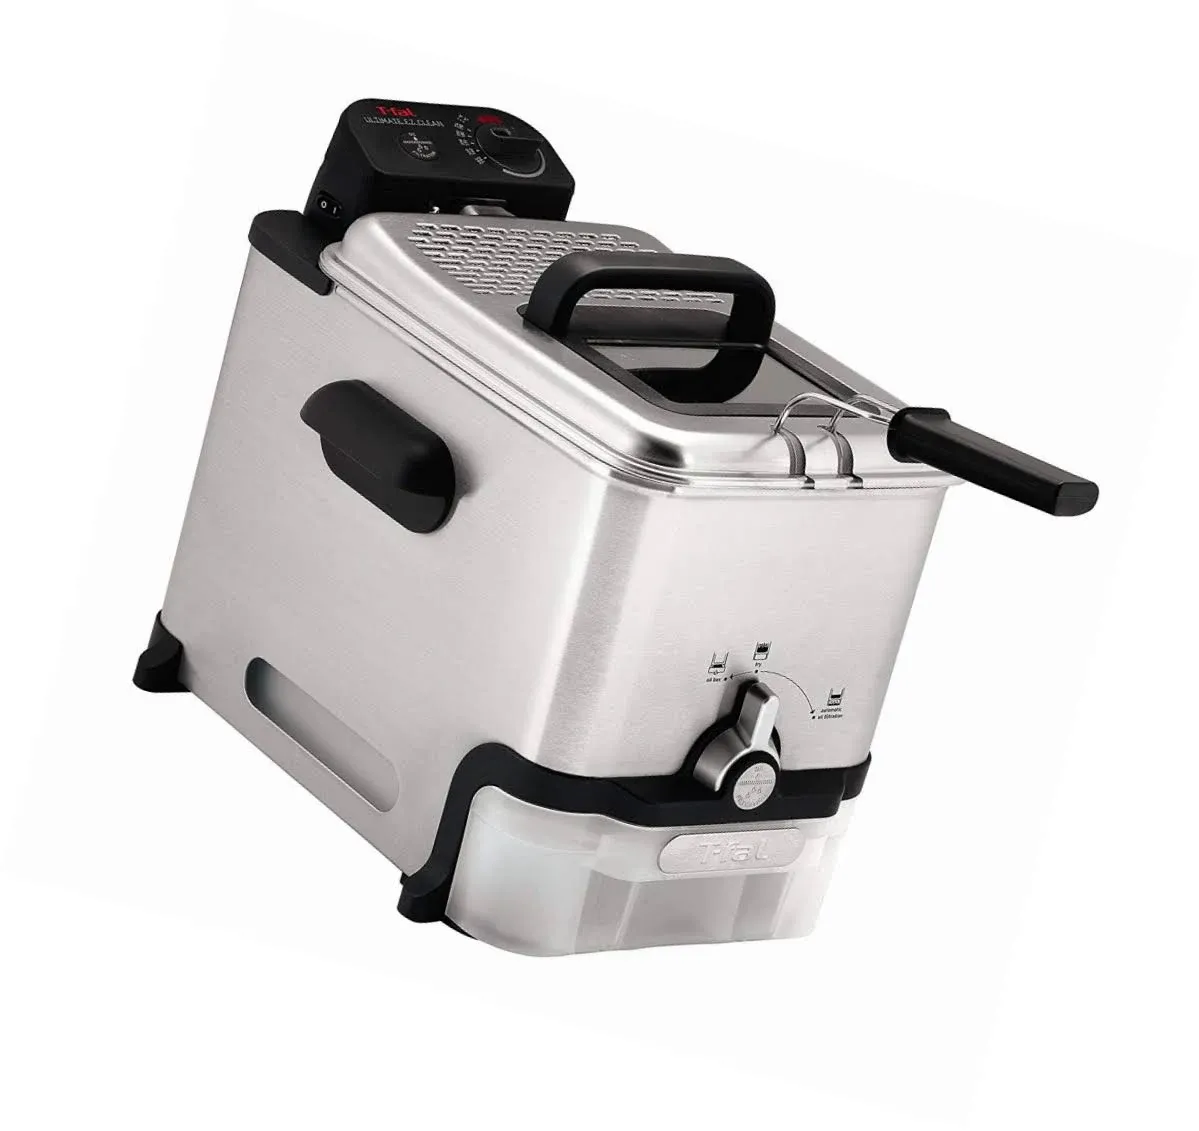 3 T-fal 3.5L Deep Fryer with Basket, 1700W, Oil Filtration, Temp Control, Digital Timer, Dishwasher Safe Parts